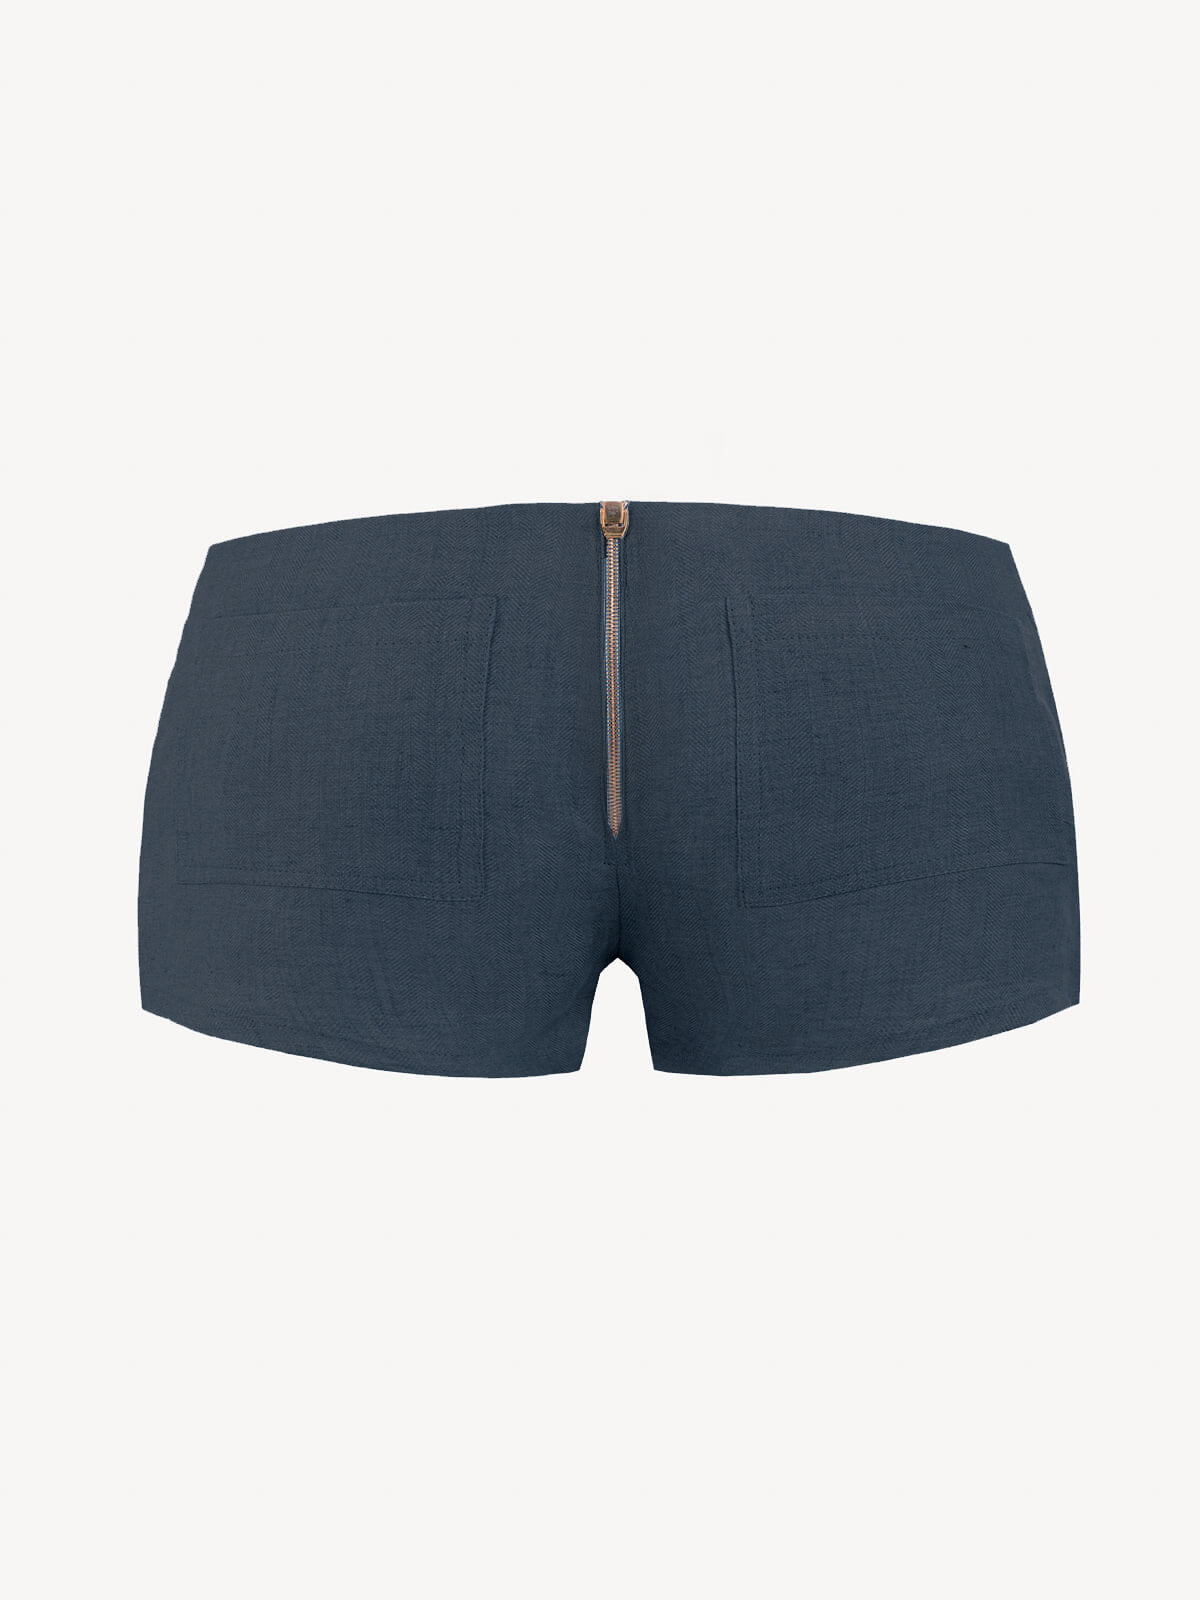 Short linen pants zip  for woman 100% Capri blue linen pant back